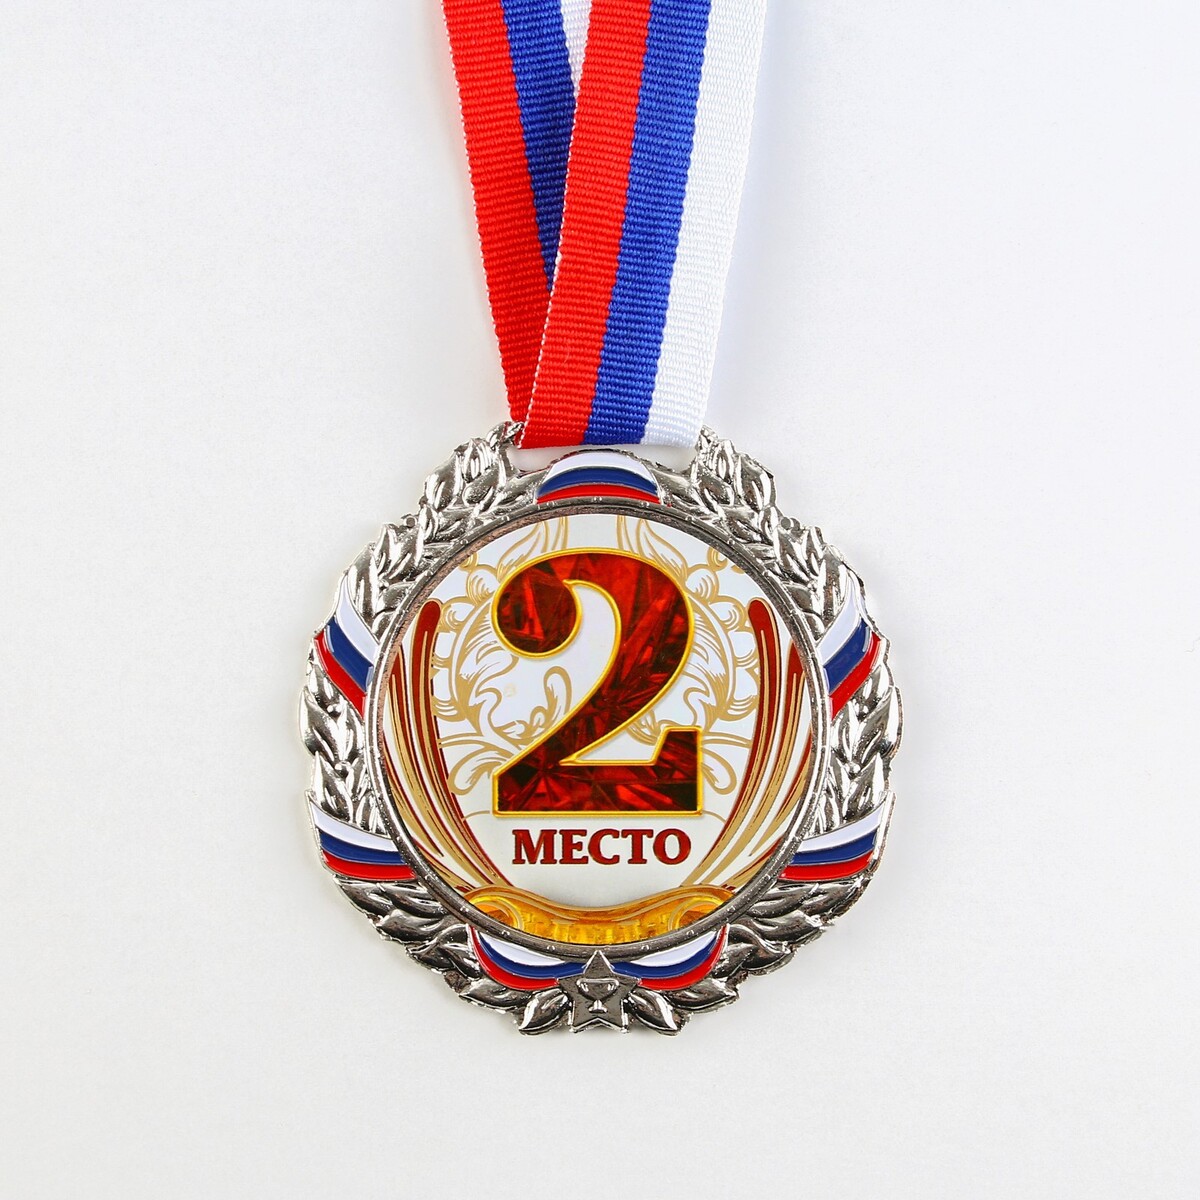 Медаль призовая 075 диам 6,5 см. 2 место, триколор. цвет сер. с лентой 3 ряд 17 место